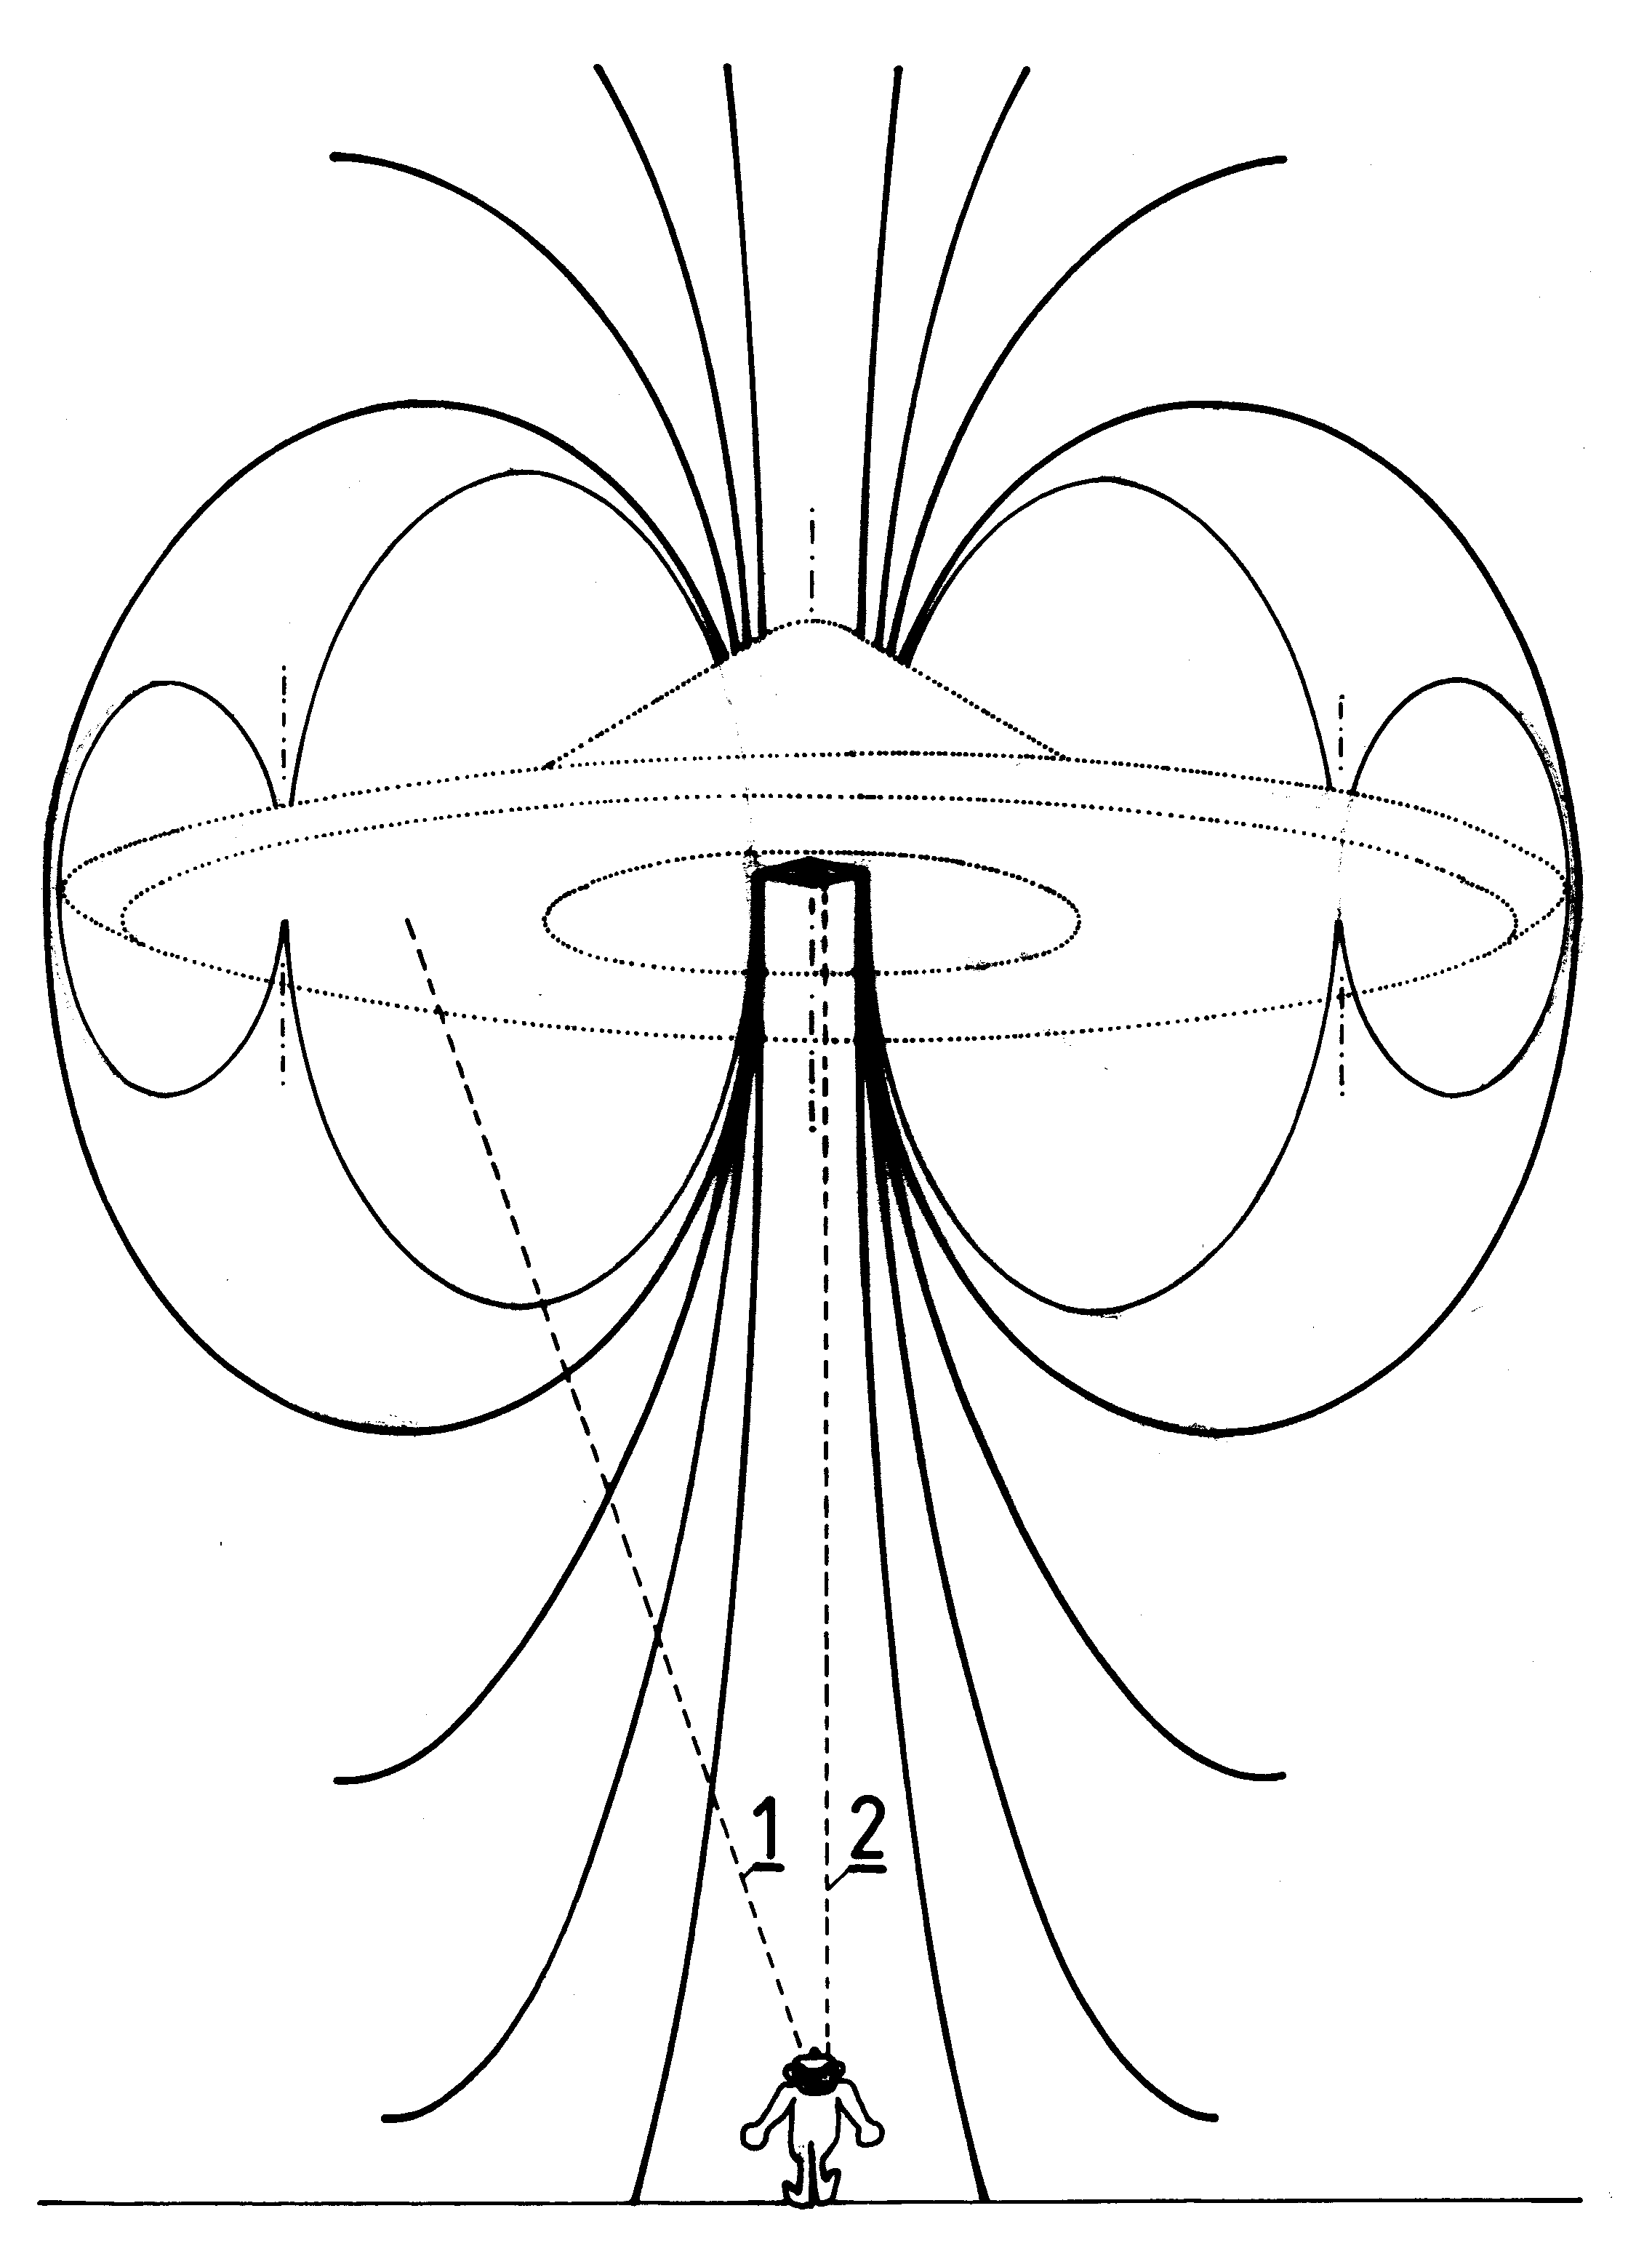 Fig. G32